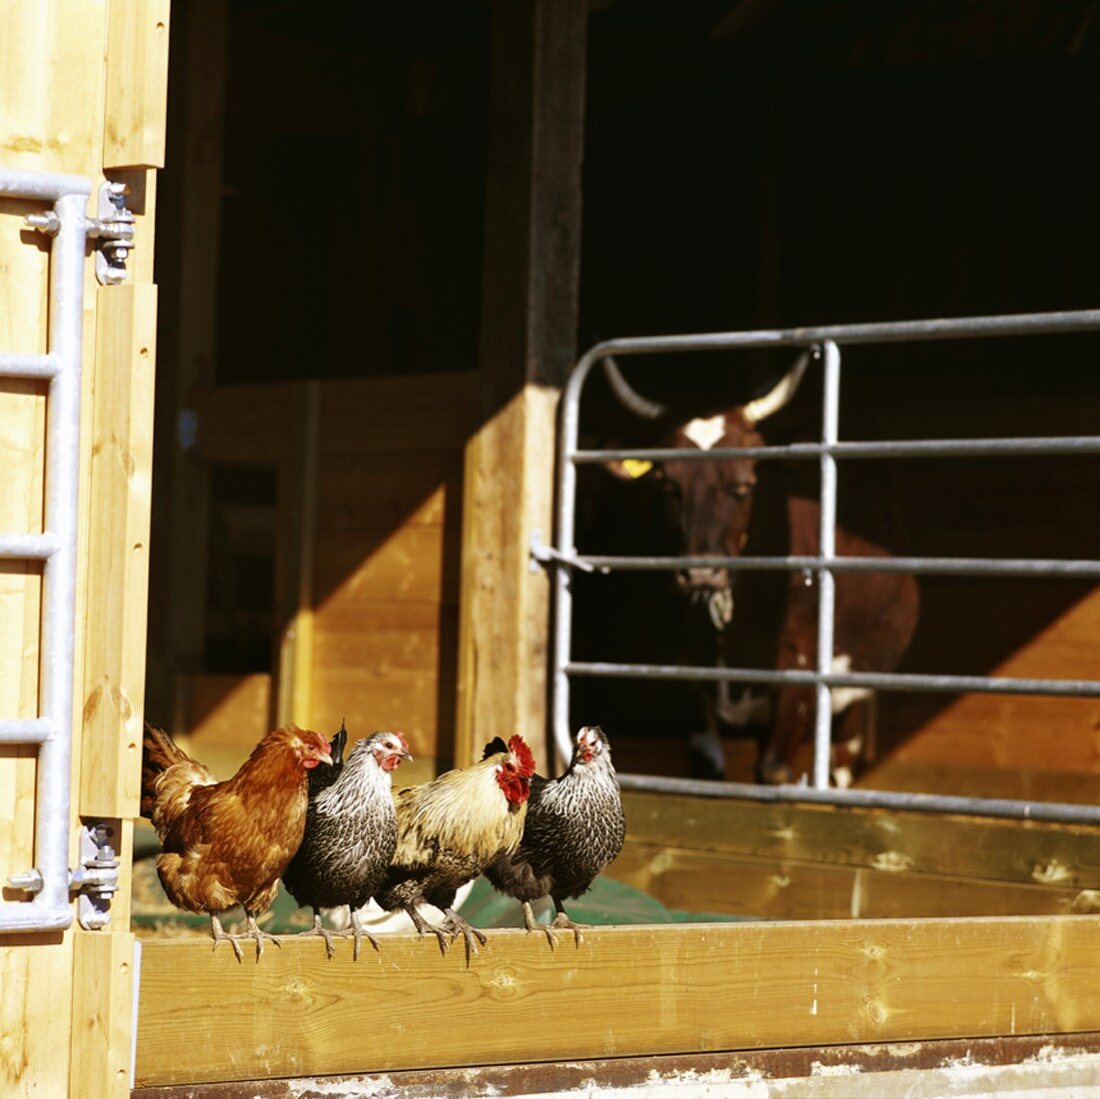 Hens on a farm